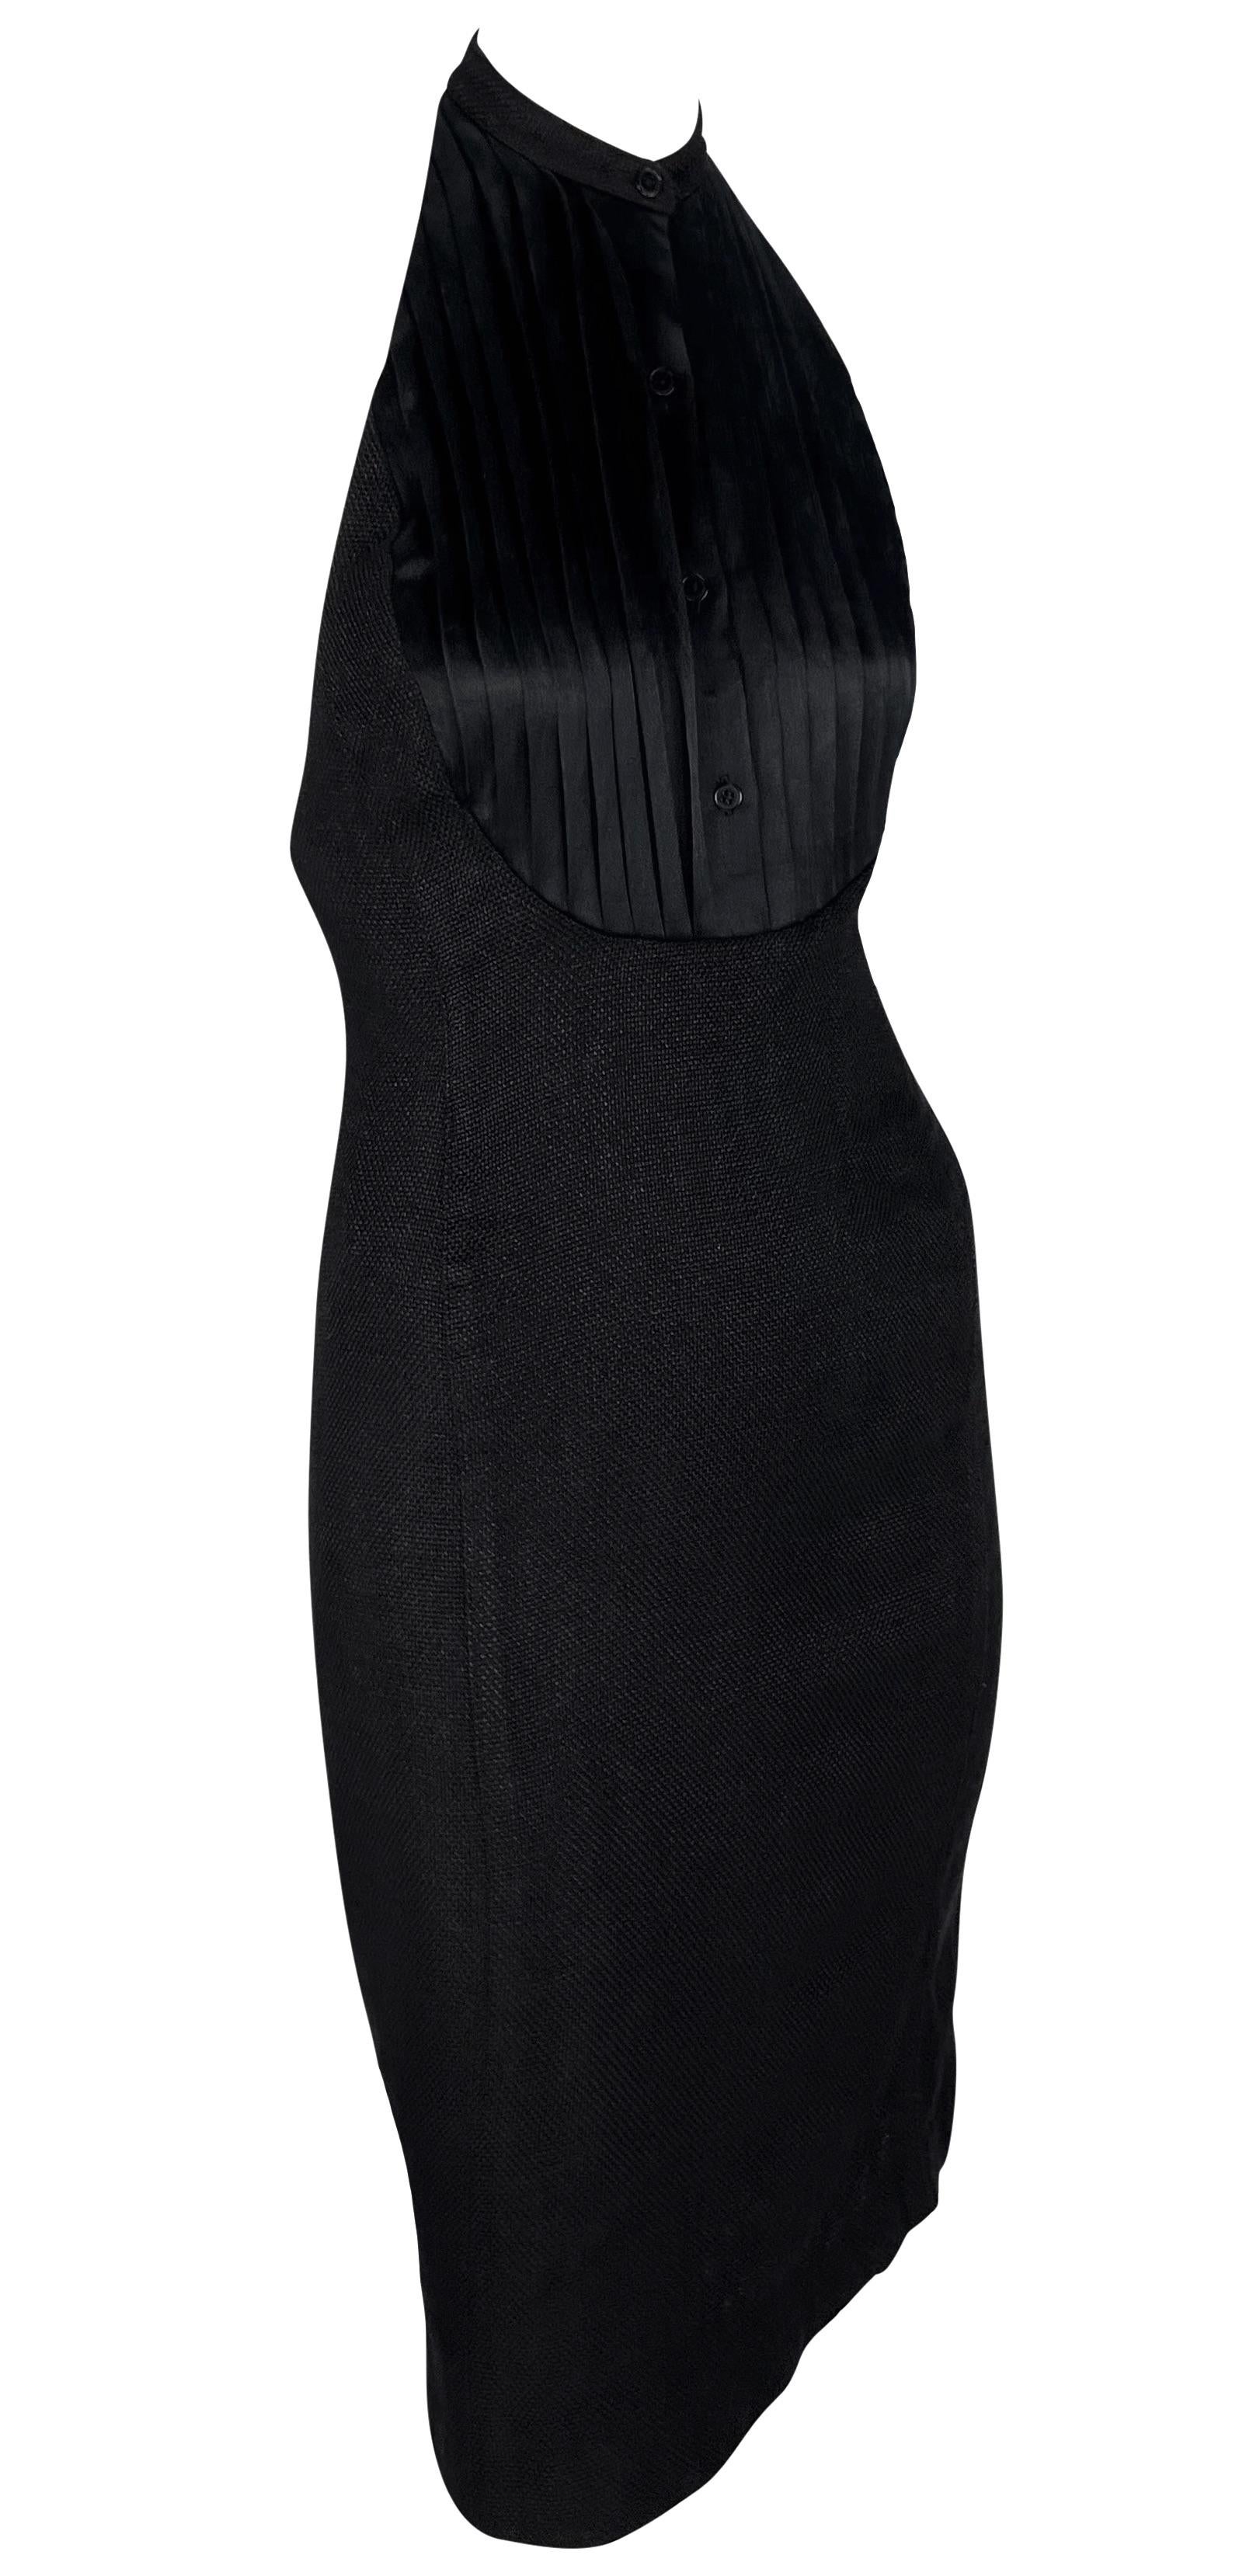 S/S 2007 Ralph Lauren Runway Black Linen Button Up Backless Halter Dress For Sale 6